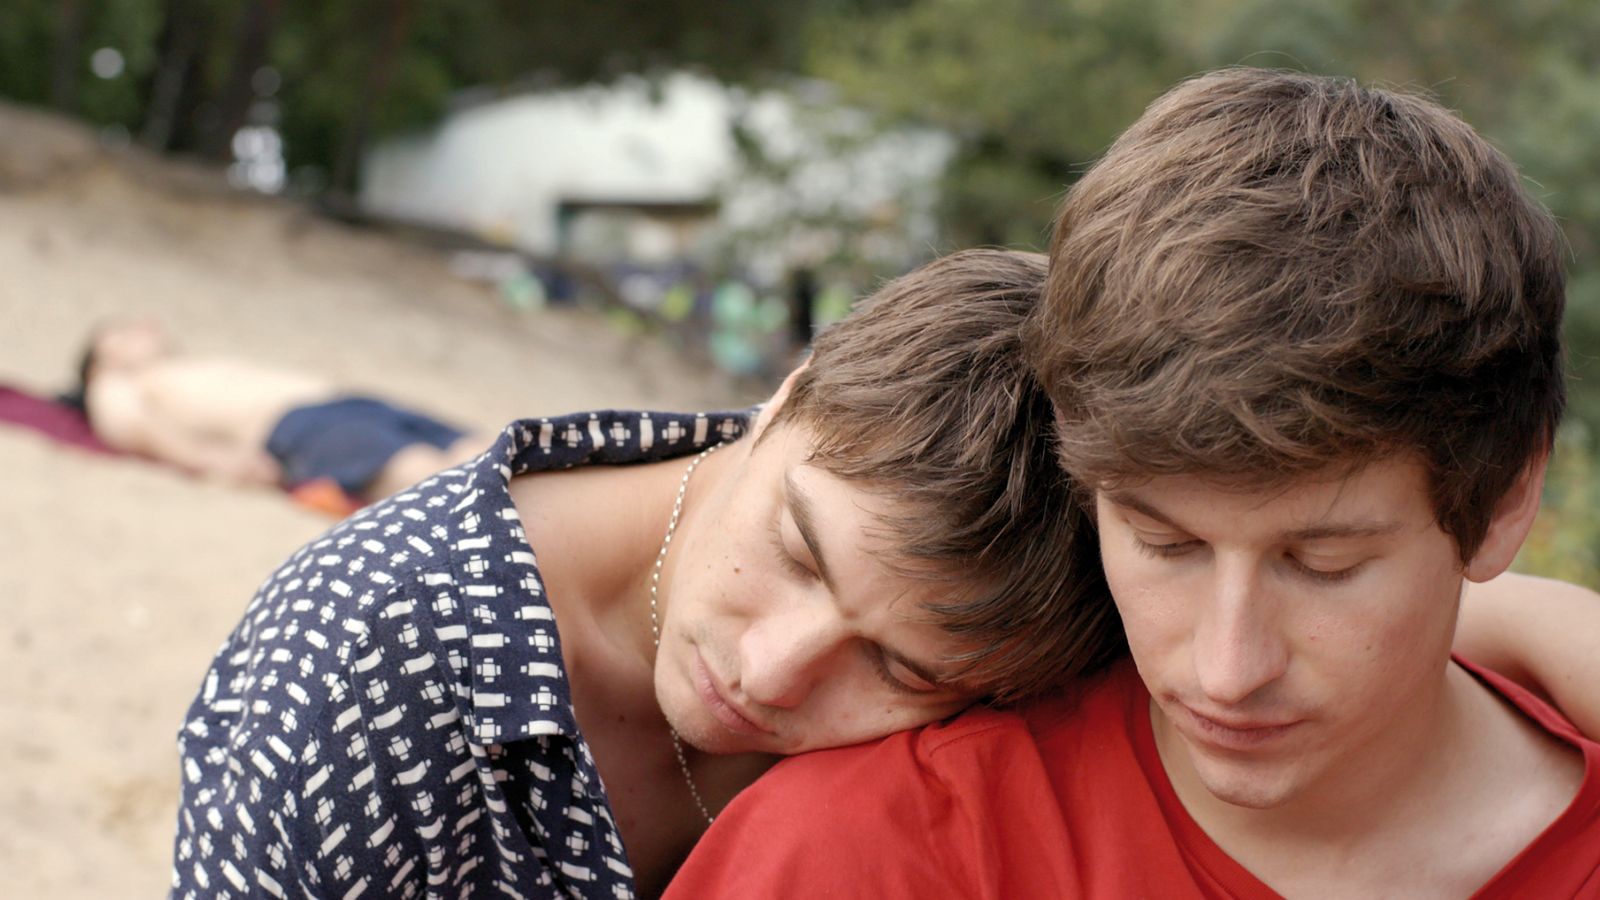 Nachwuchspreis für queeren Film “Drifter”